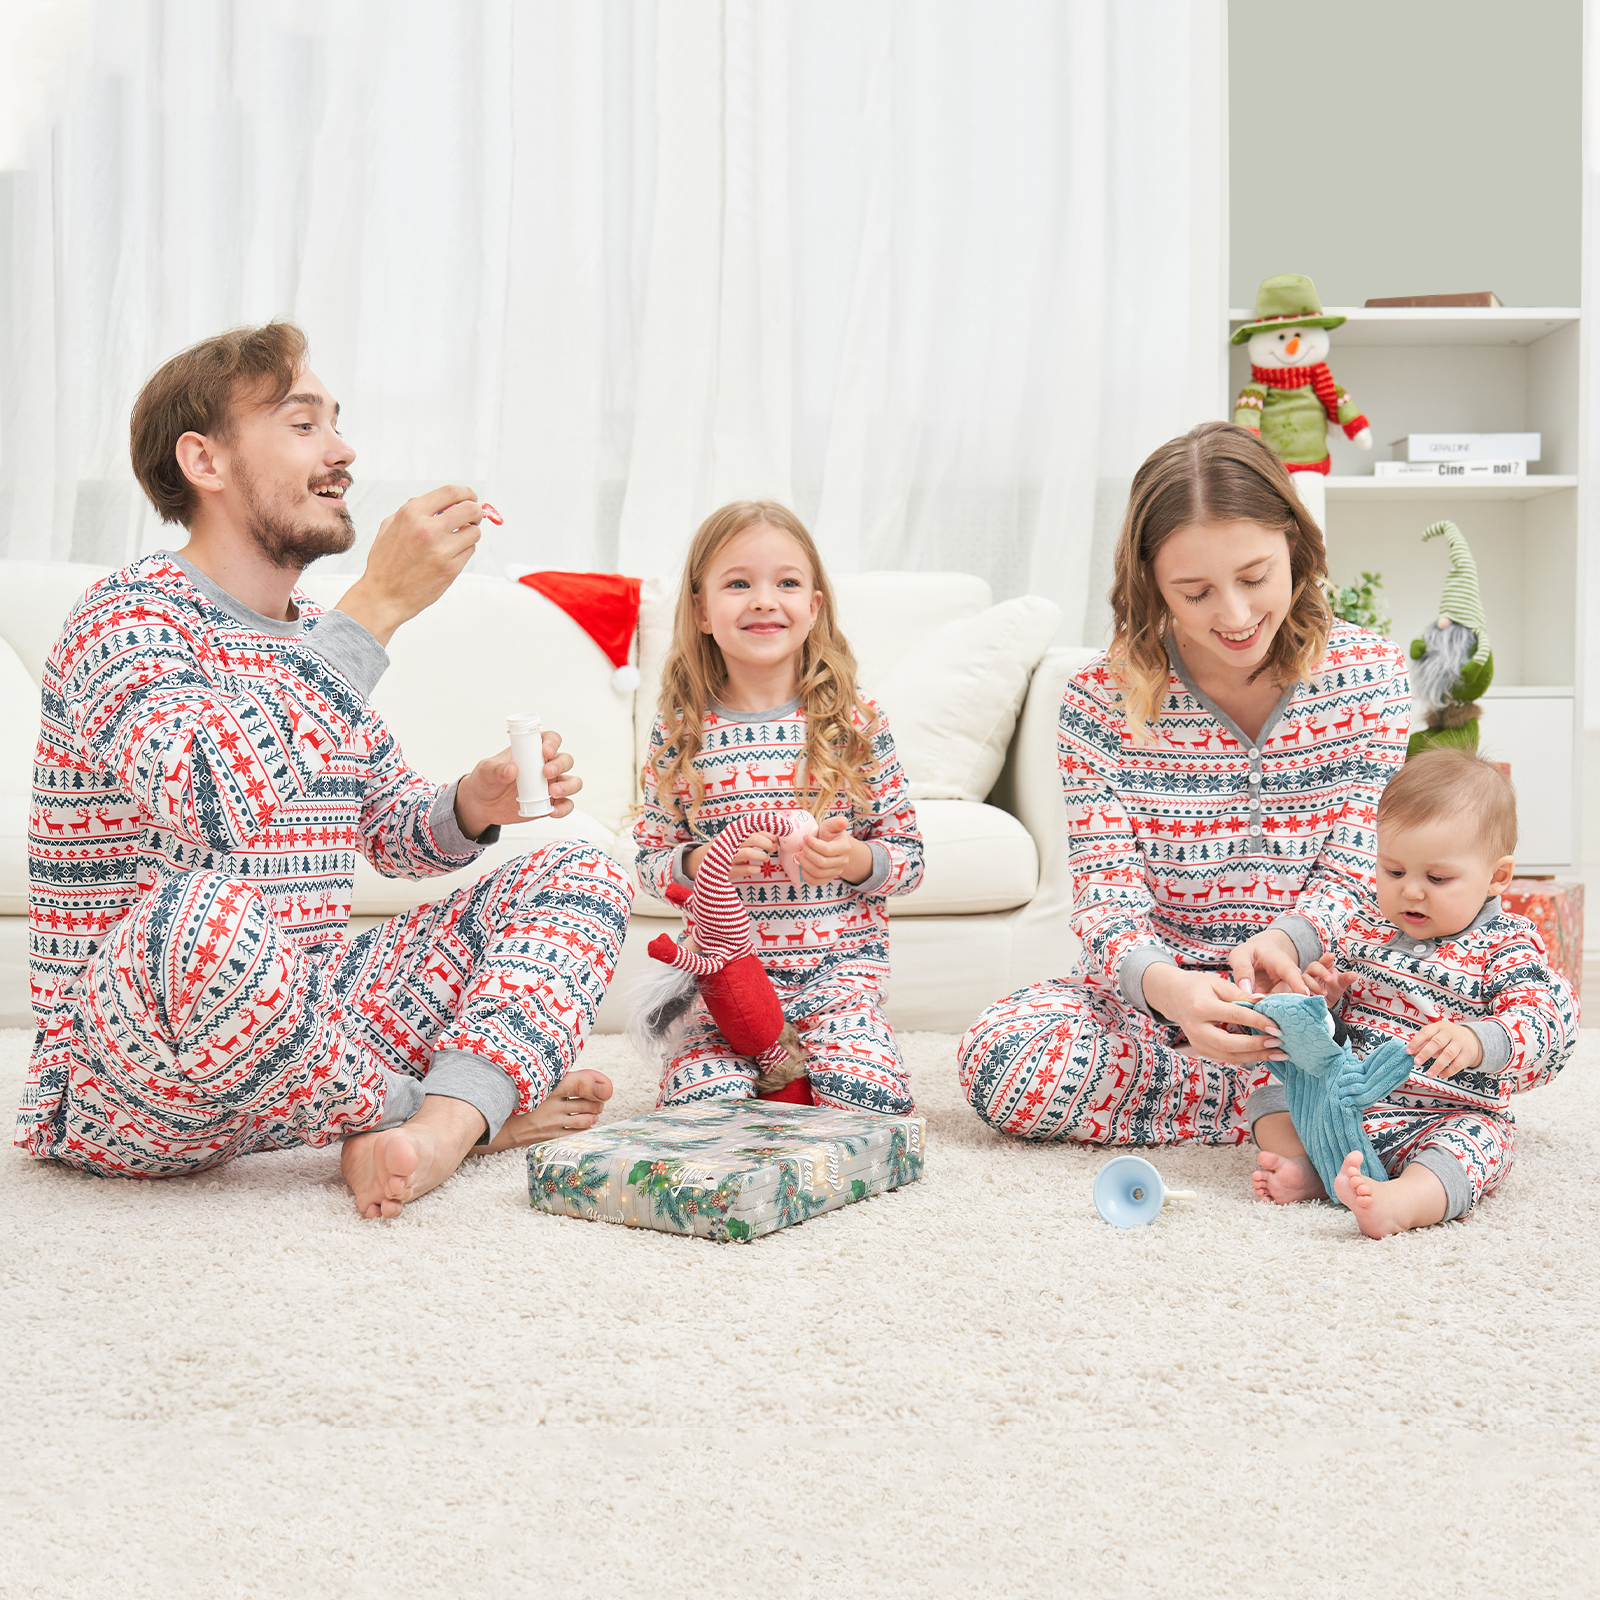 Baozhu Family Matching Reindeer Print Christmas Sleepwear Pajamas Set, 2 Piece (Unisex Baby & Toddler 3M-18M) - image 5 of 15